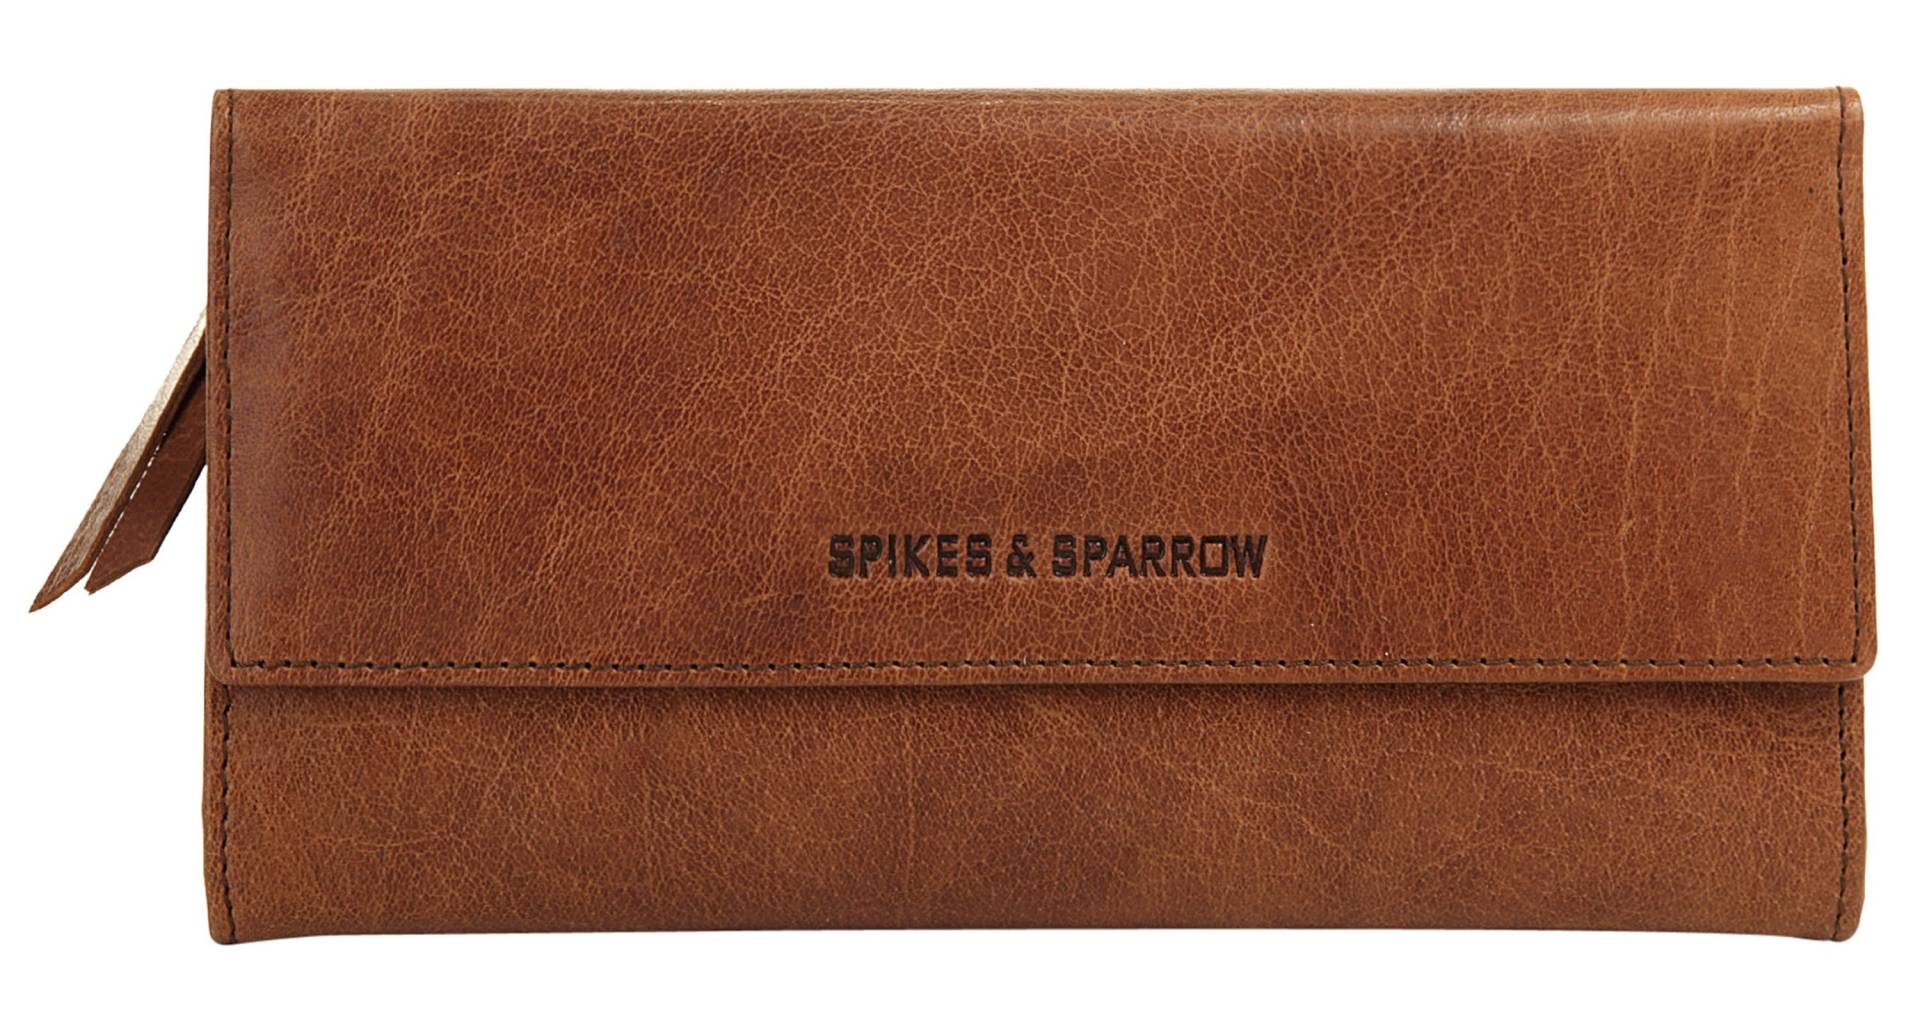 Spikes & Sparrow Geldbörse, echt Leder von Spikes & Sparrow